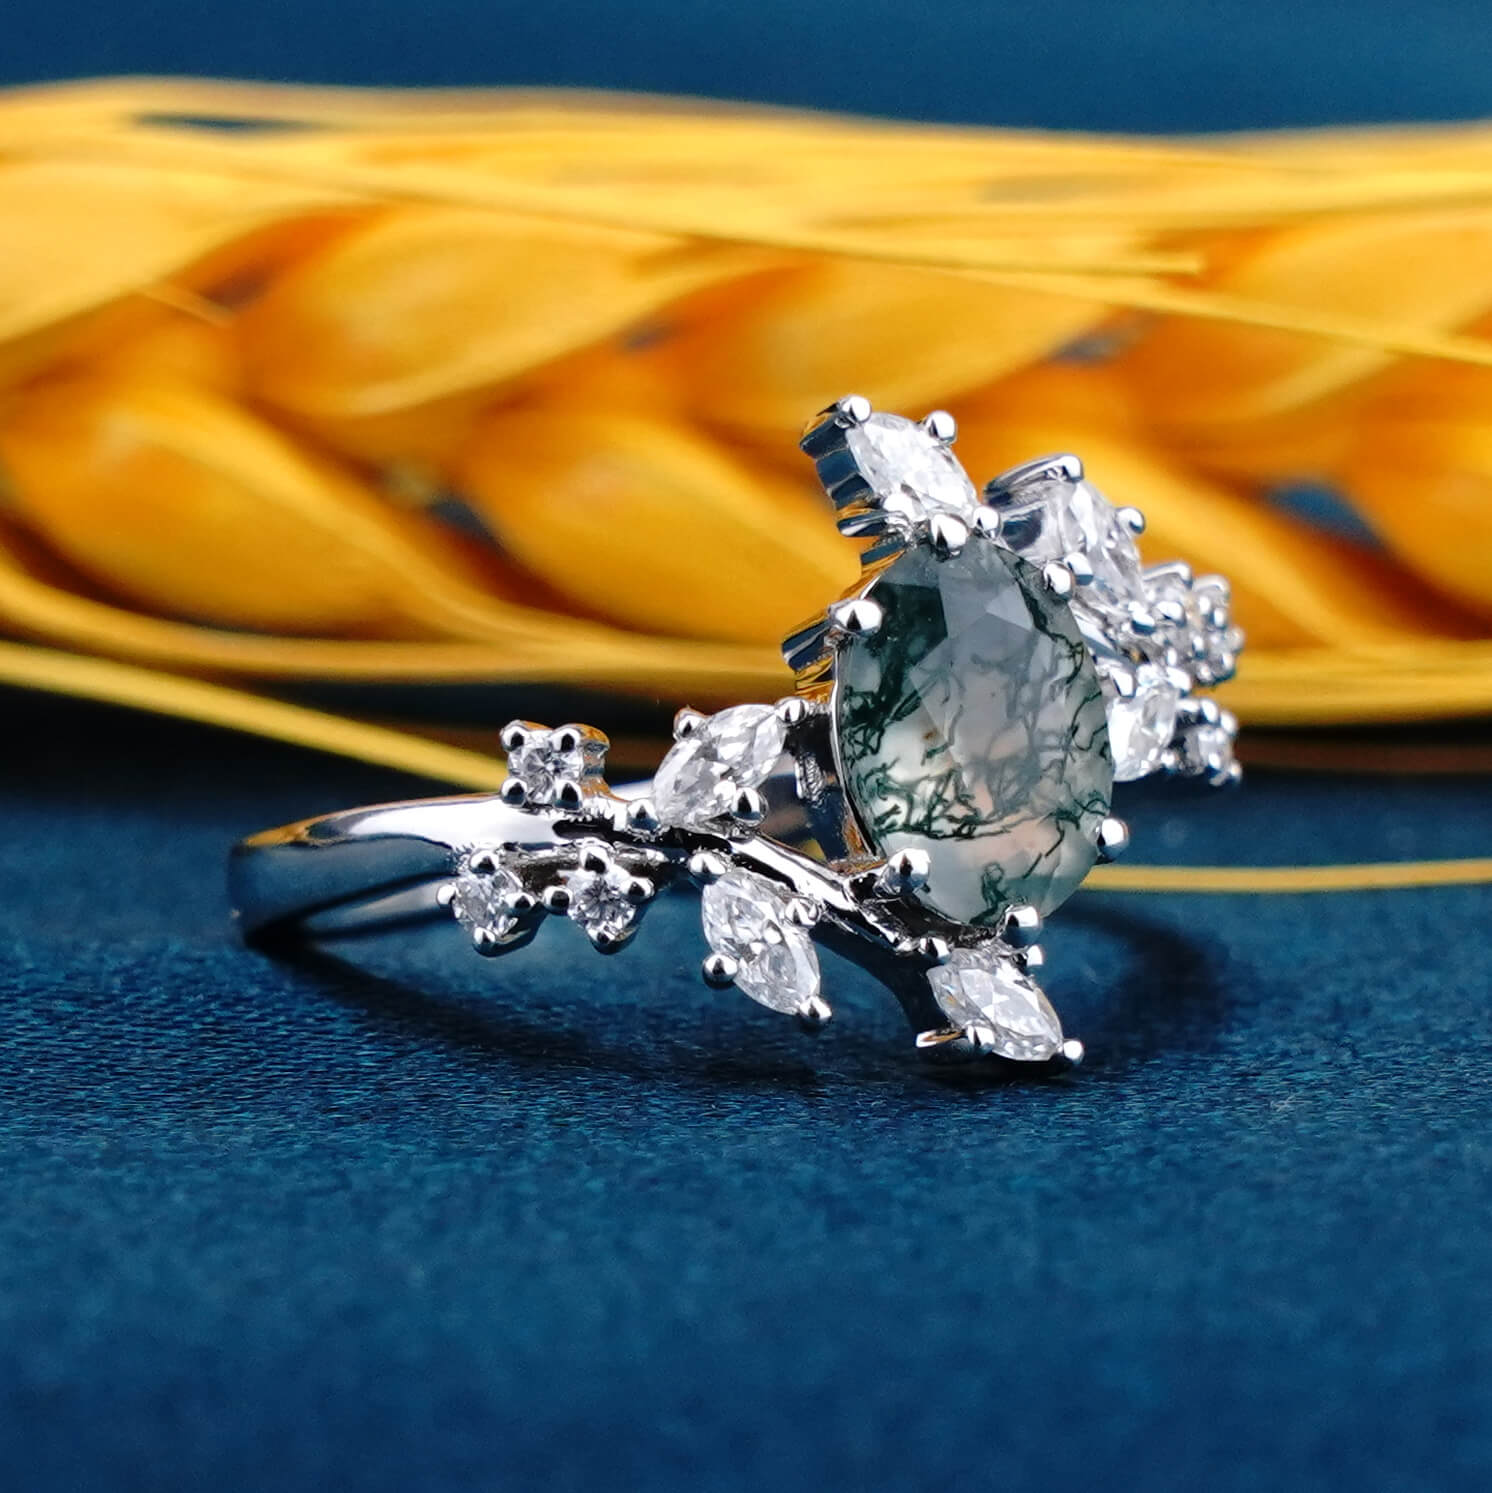 Sylvan Whisper Ring Moss Agate Engagement Rings 14K White Gold Rings，custom gold ring , wedding ring for women,anniversary rings for wife